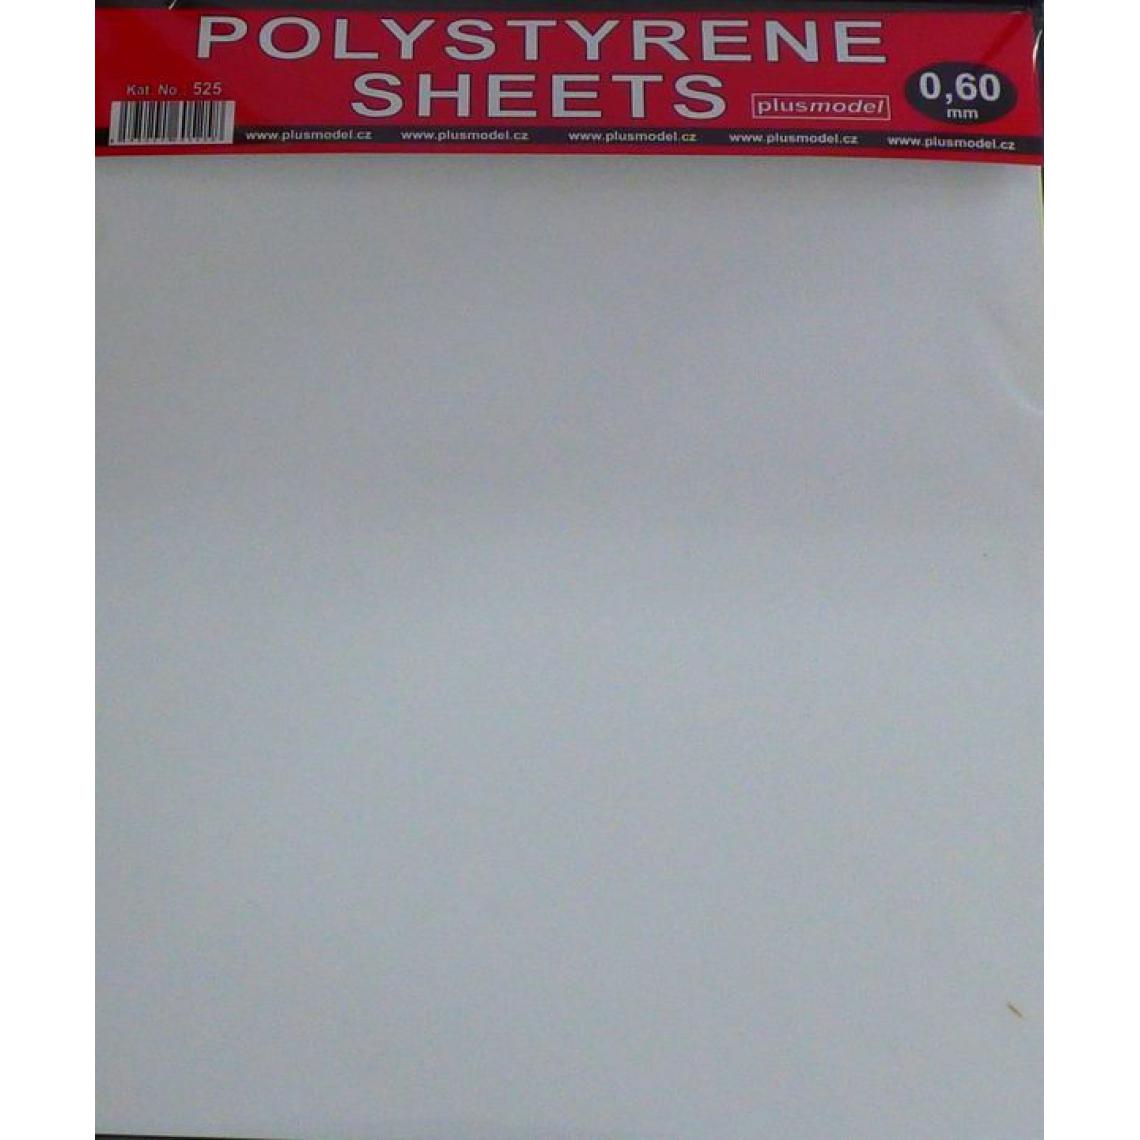 Plus Model - Polystyrene sheets 0,60mm - Plus model - Accessoires et pièces